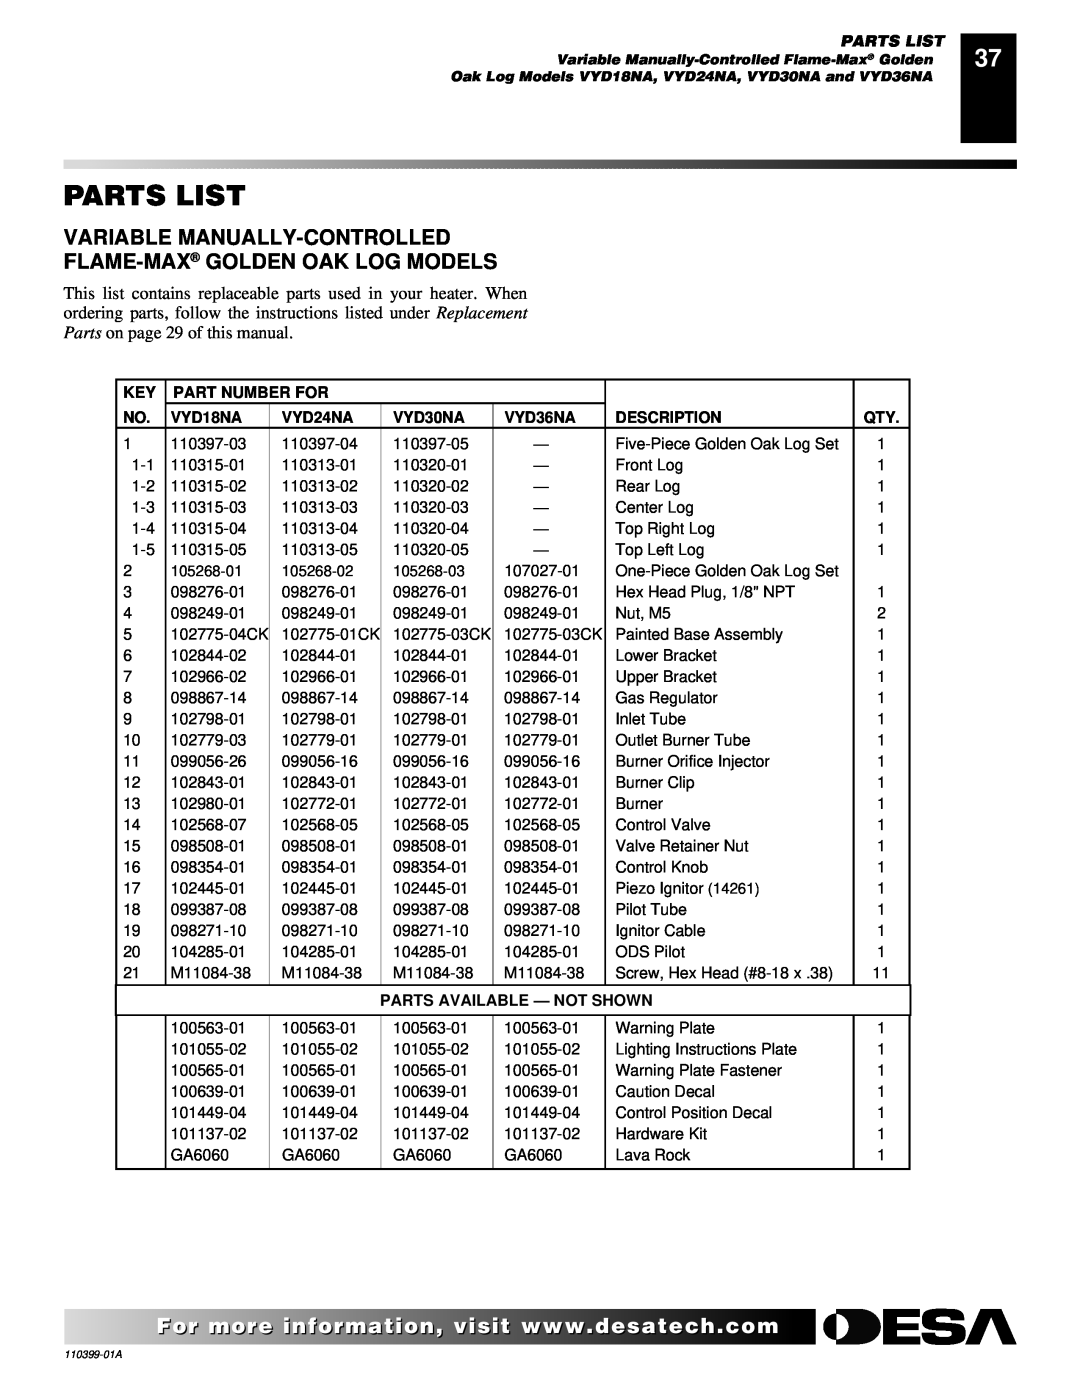 Desa FLAME-MAX Vintage Parts List, Variable Manually-Controlled, Flame-Max Golden Oak Log Models, Part Number For, VYD18NA 